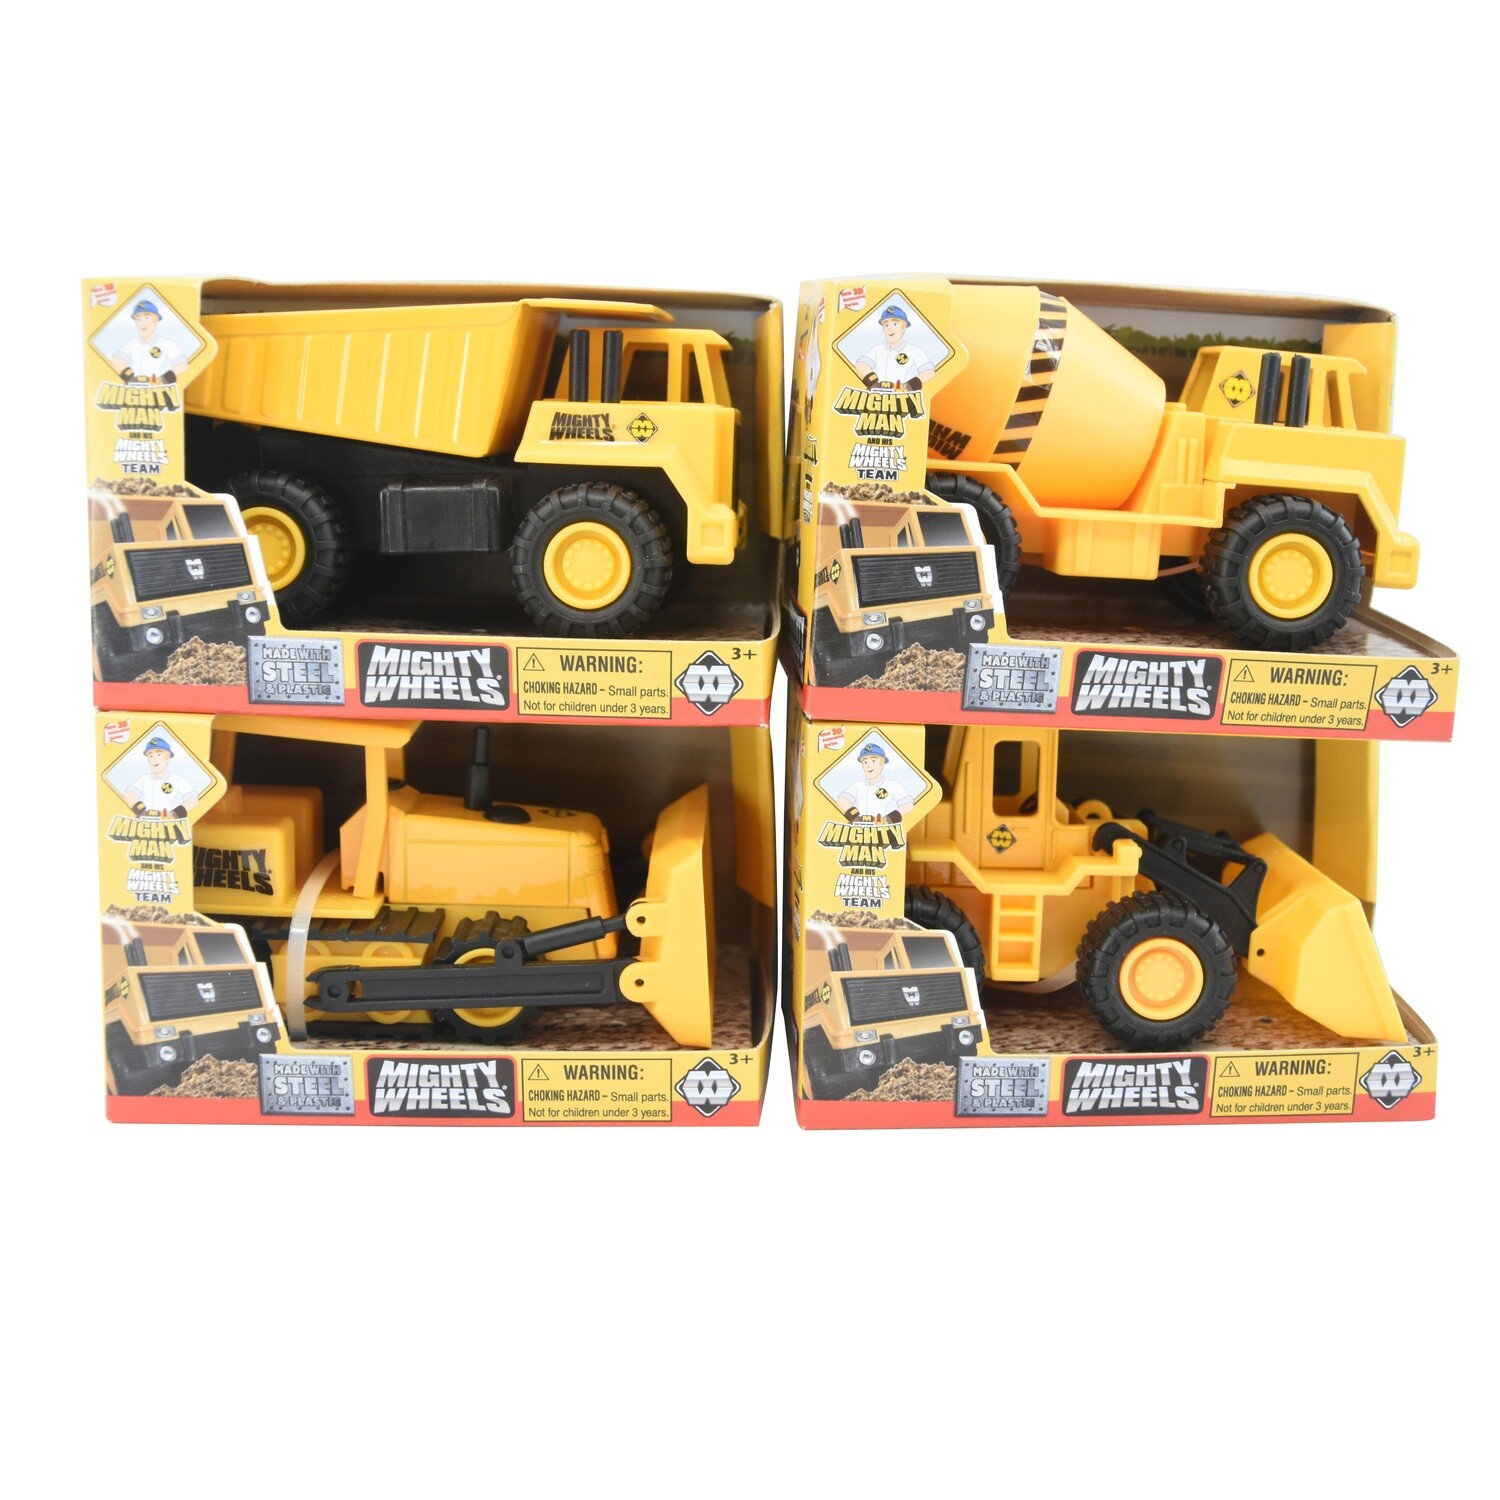 Mighty Wheels 4.75” Truck assortment - Dump Truck, Front Loader, Cement Mixer, Bulldozer